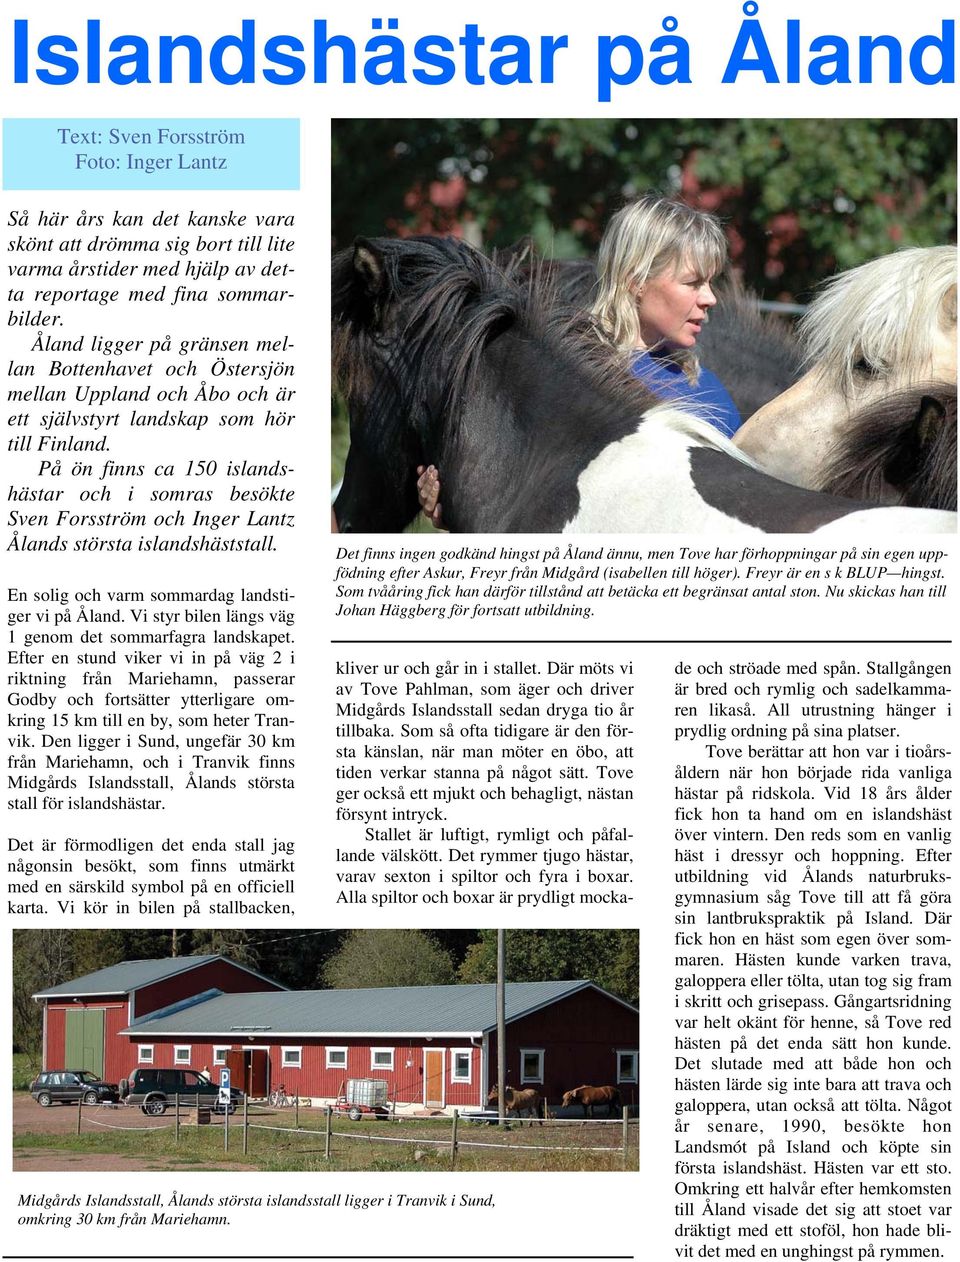 På ön finns ca 150 islandshästar och i somras besökte Sven Forsström och Inger Lantz Ålands största islandshäststall. En solig och varm sommardag landstiger vi på Åland.